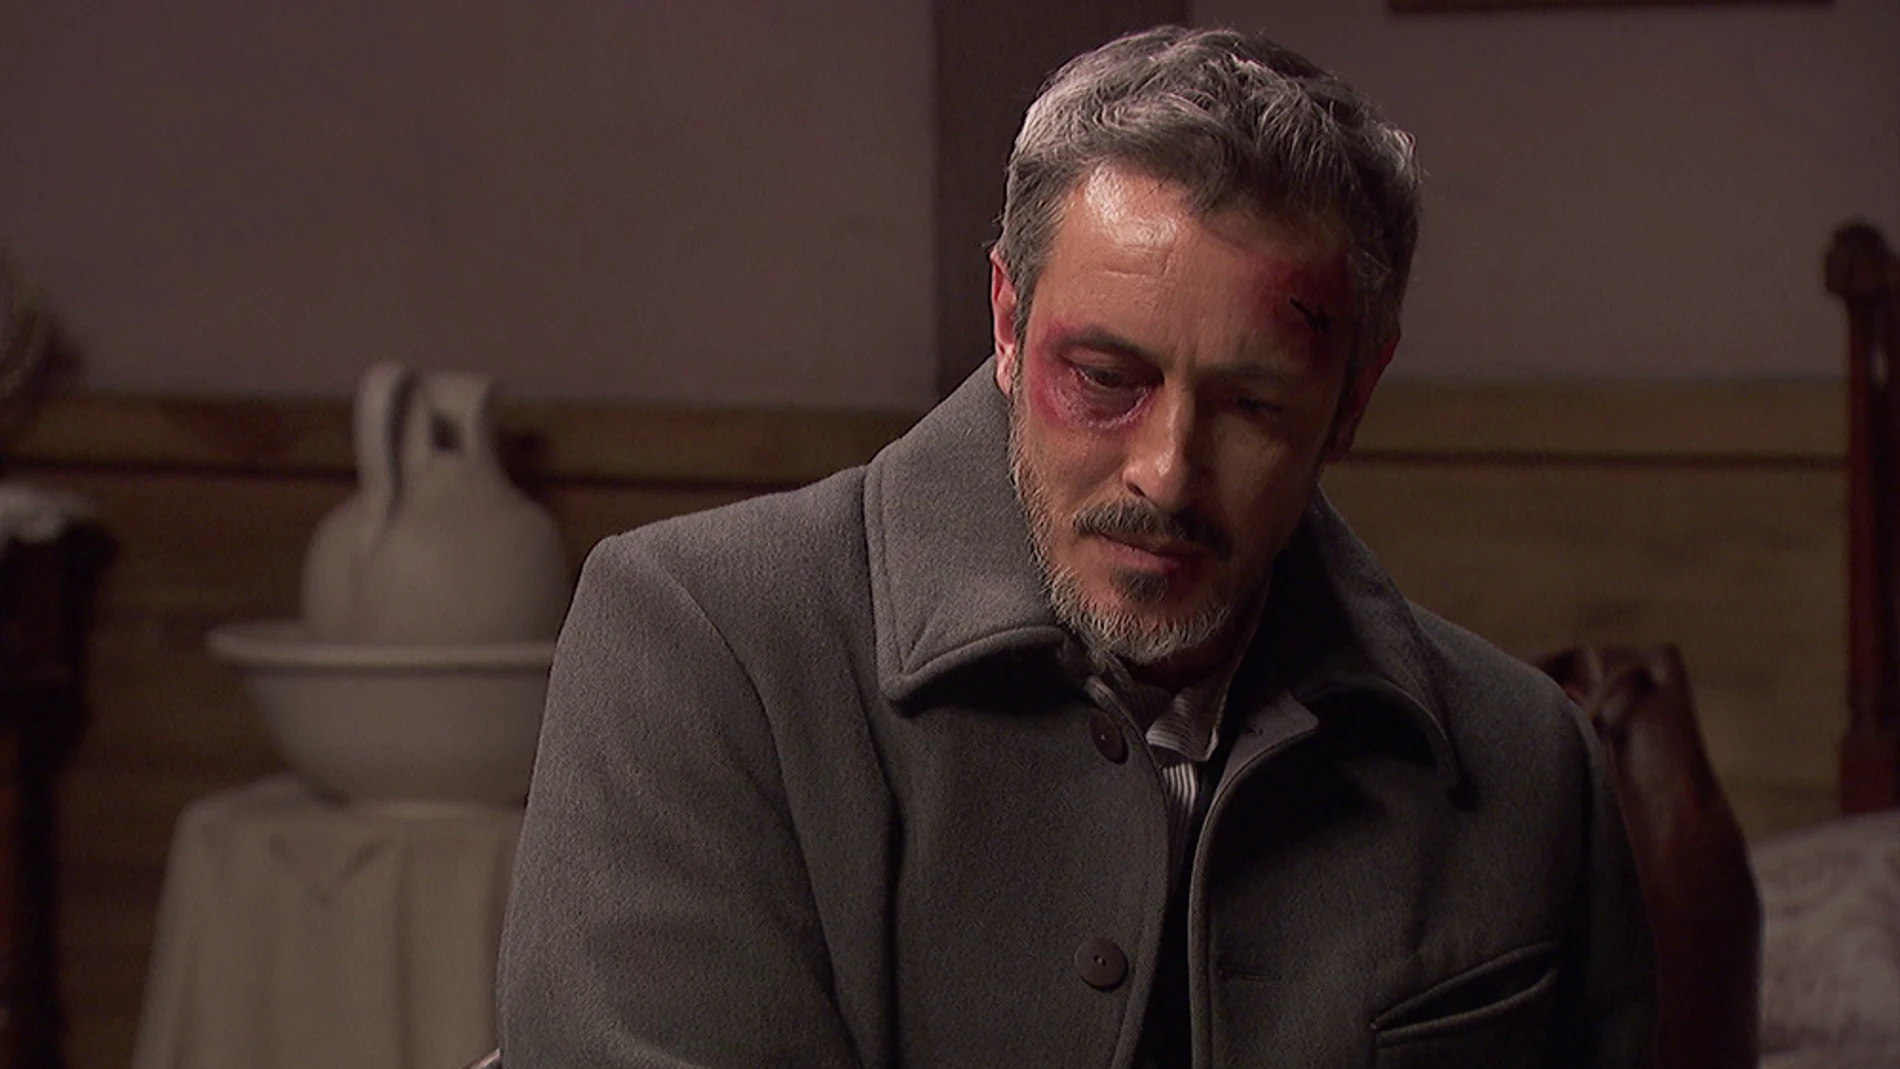  Alfonso, furioso, se enfrenta a Emilia: "No quiero tu compasión, ni tu lástima, quiero la verdad"